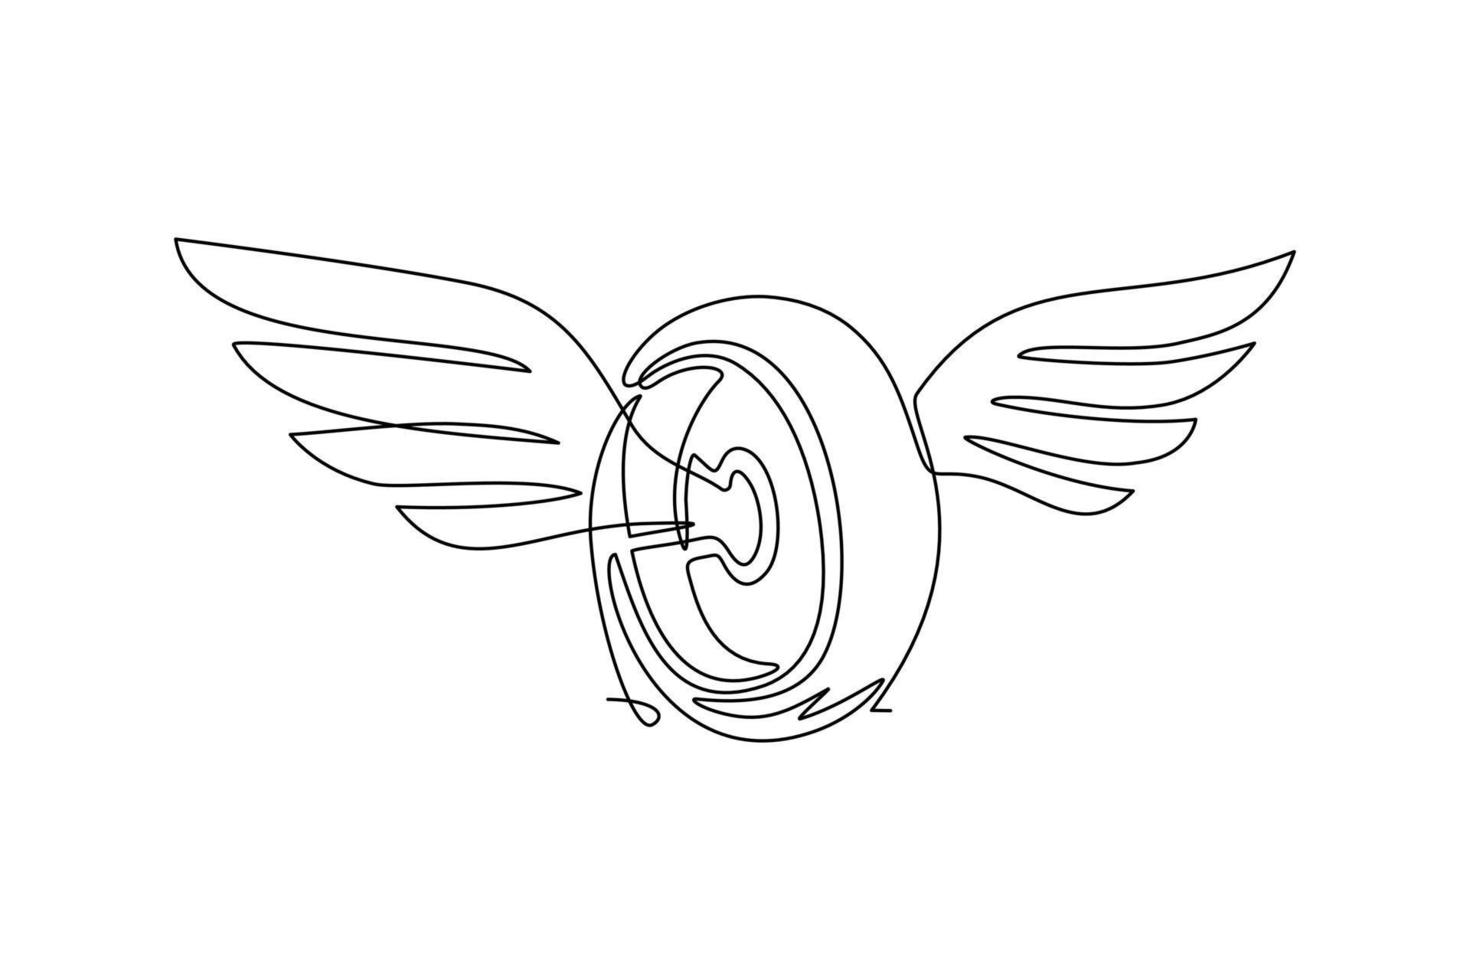 roue de dessin à une seule ligne avec des ailes. pneus de voiture ailés isolés. concevoir un élément plat pour le logo, l'étiquette, l'emblème, le signe, le badge, le t-shirt, l'affiche. ligne continue moderne dessiner illustration vectorielle graphique vecteur